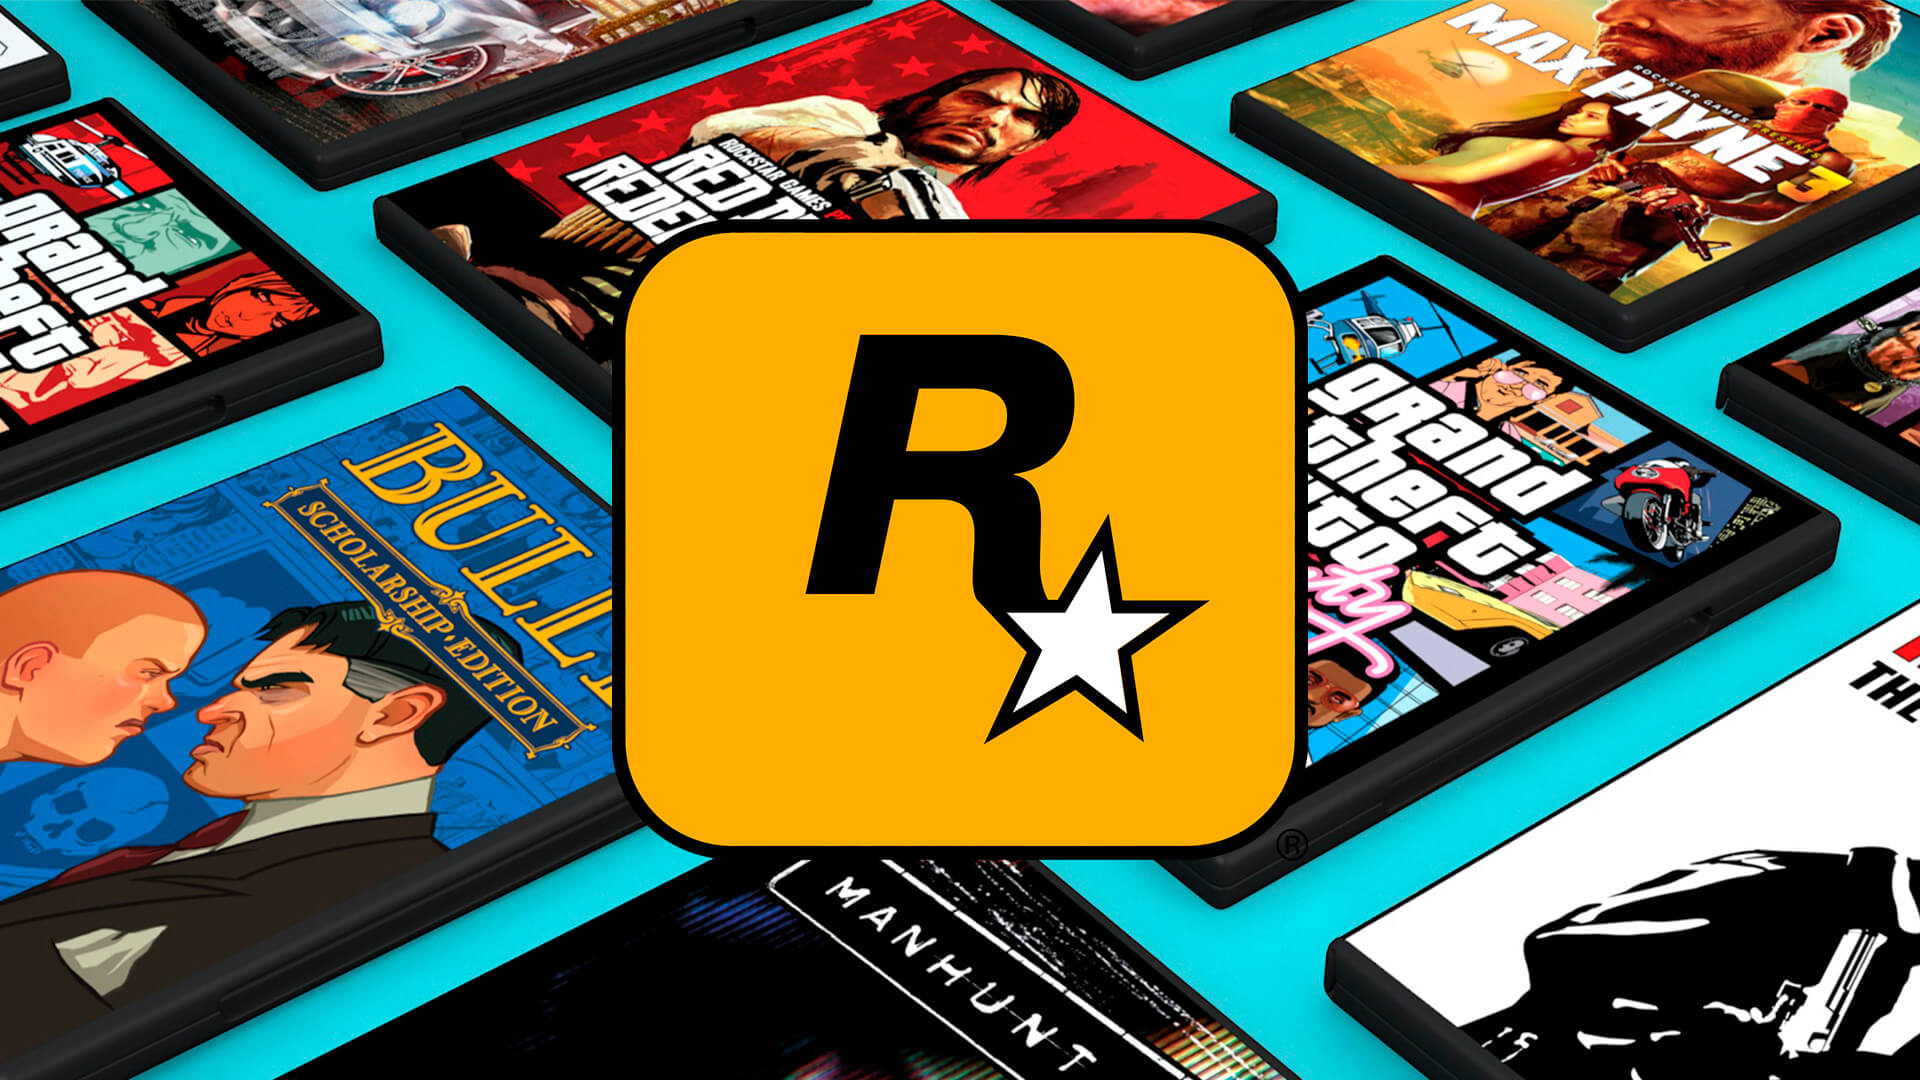 Rockstar Games encerra parceria com  Prime Gaming em jogos